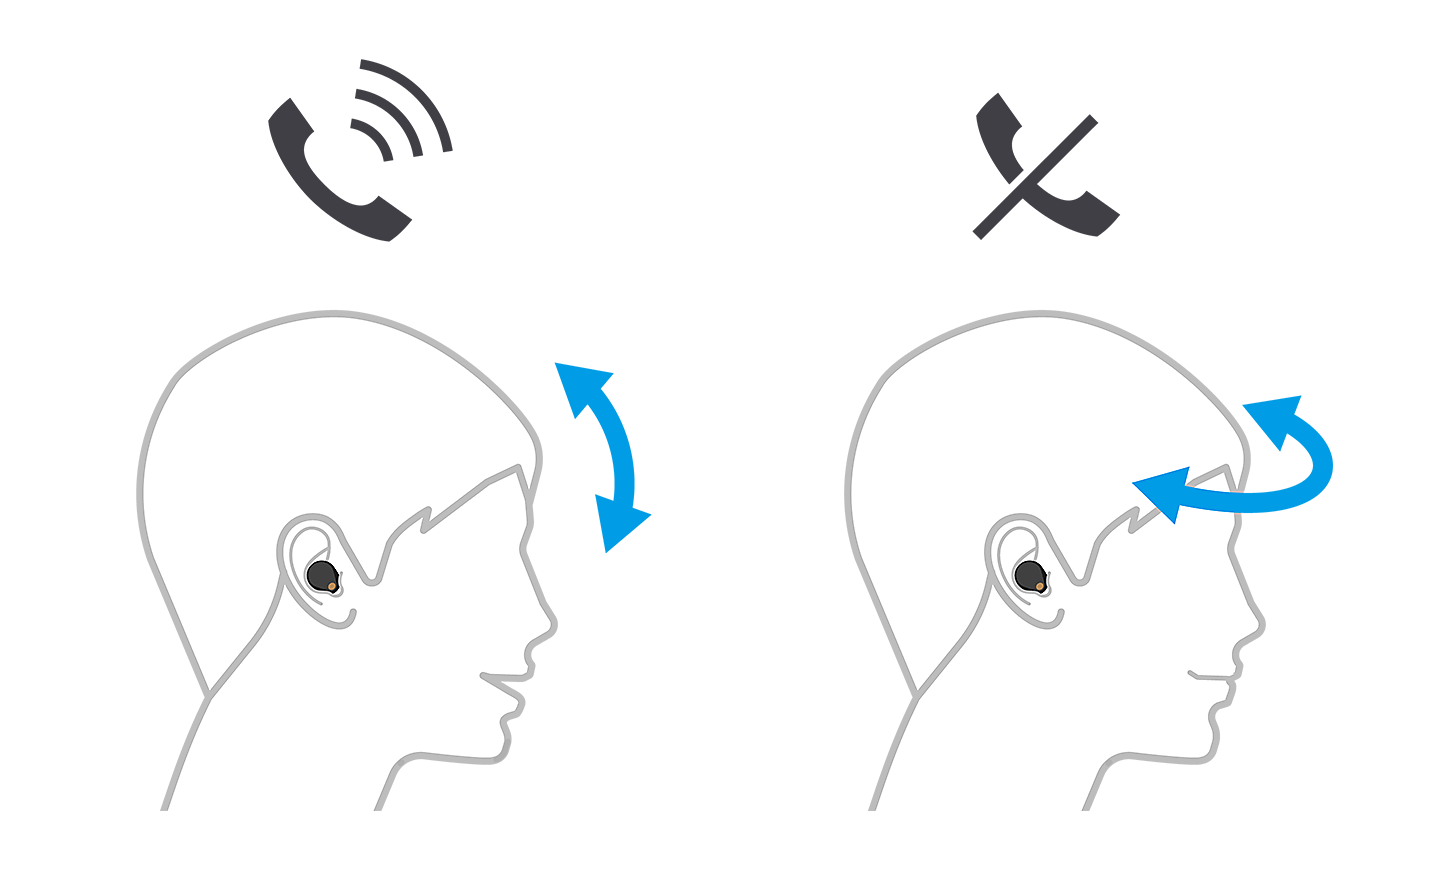 Hình ảnh hai đầu người, bên trái chấp nhận cuộc gọi với mũi tên lên và xuống, bên phải từ chối với mũi tên trái phải